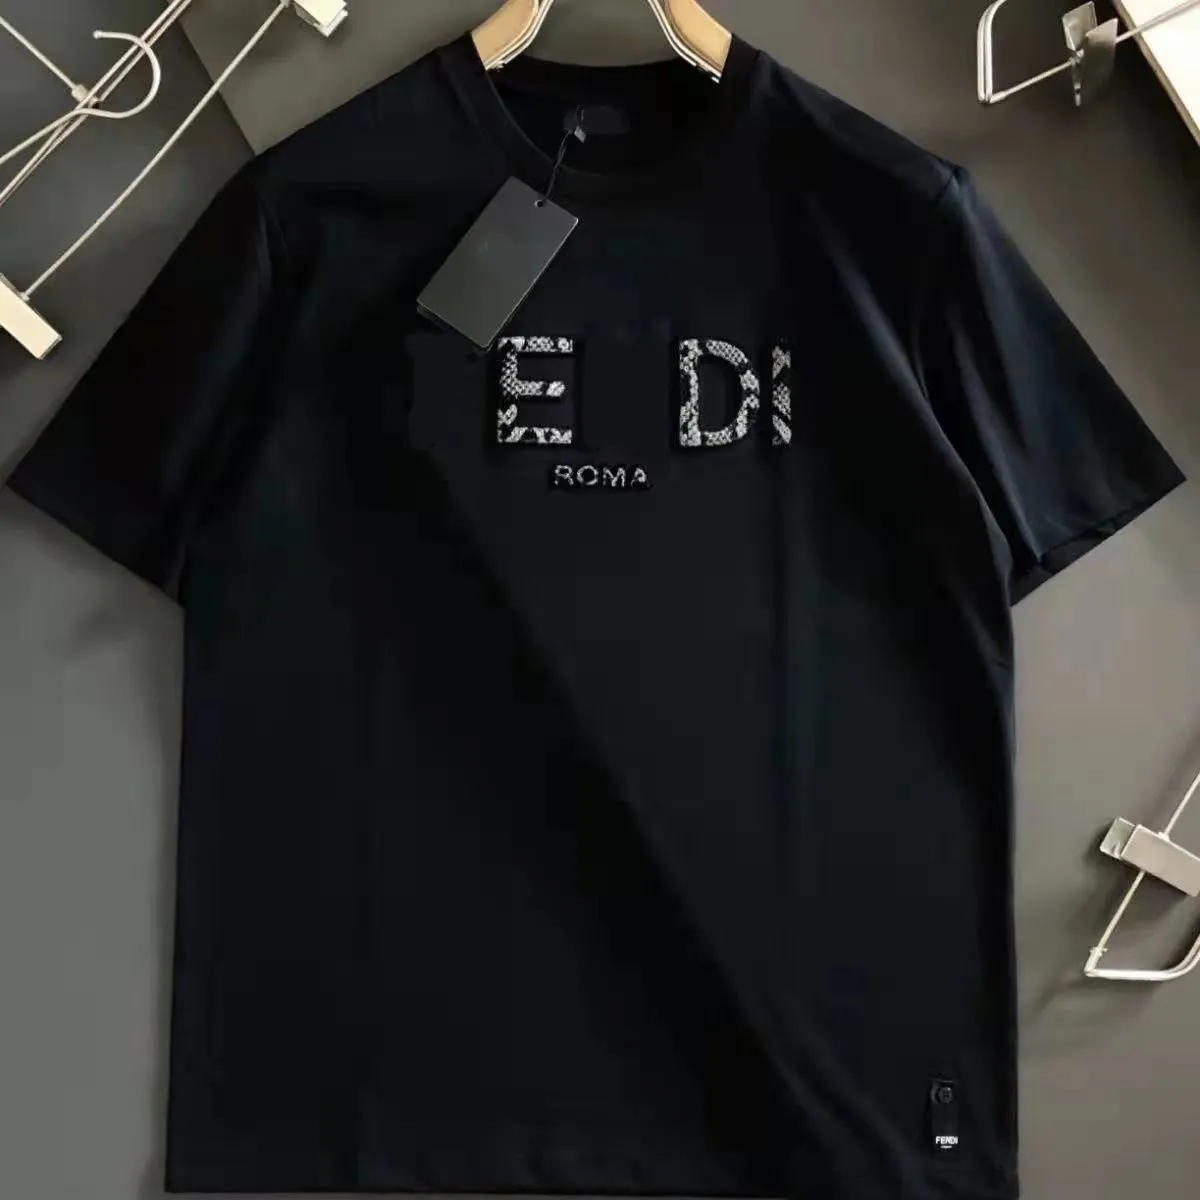 2022-2023 Męskie mody T Shirt Projektanci Mężczyźni Ubranie Czarne białe koszulki Krótkie rękawowe damskie odzież Hip Hop Streetwear Tshirts S-5xl#007